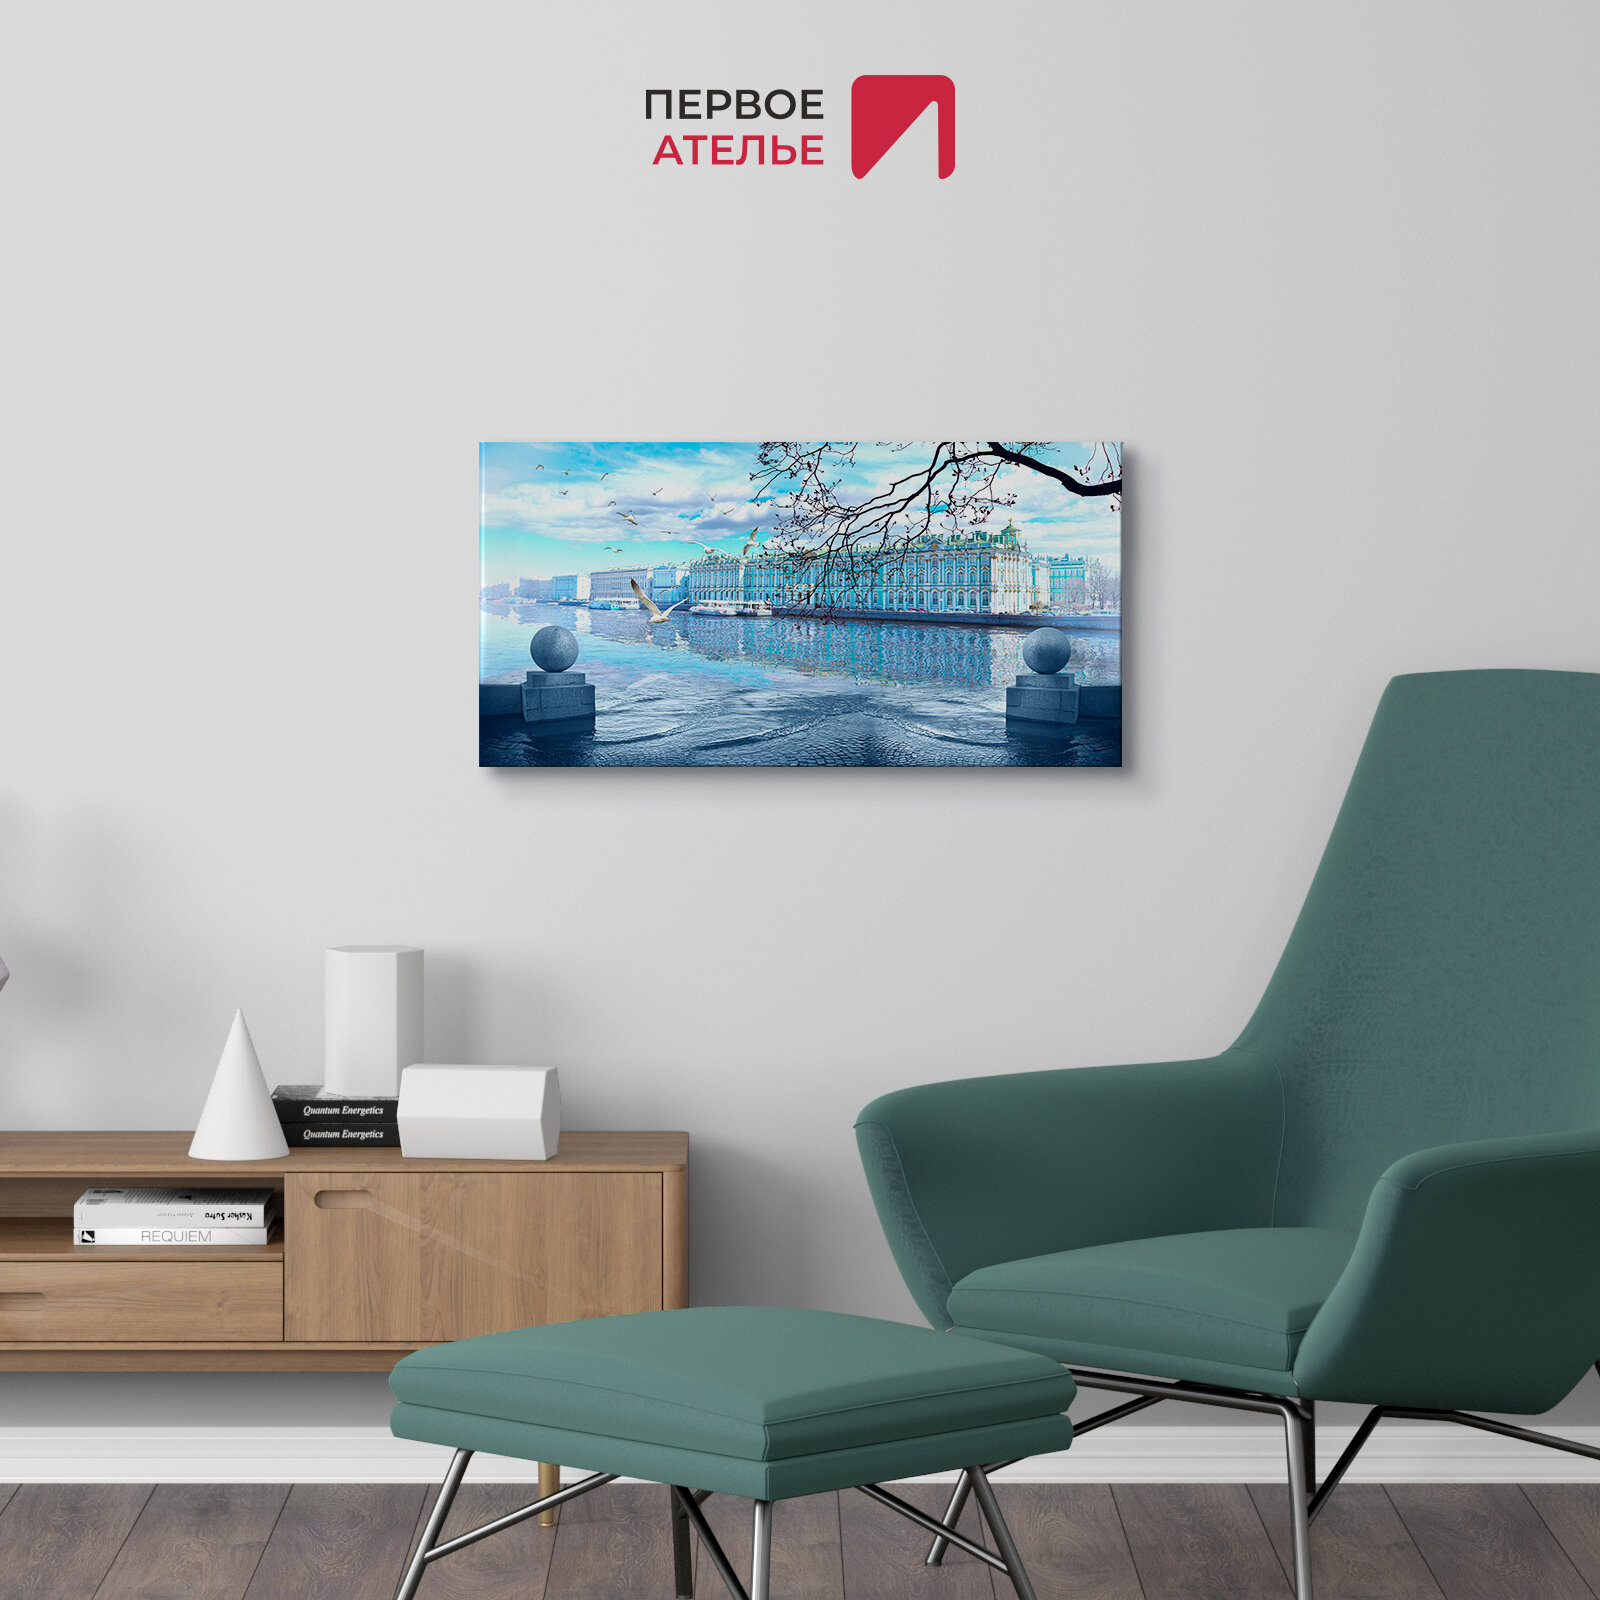 Картина на стену на холсте для интерьера первое ателье "Вид на Эрмитаж" 80х40 см (ШхВ), на деревянном подрамнике Premium